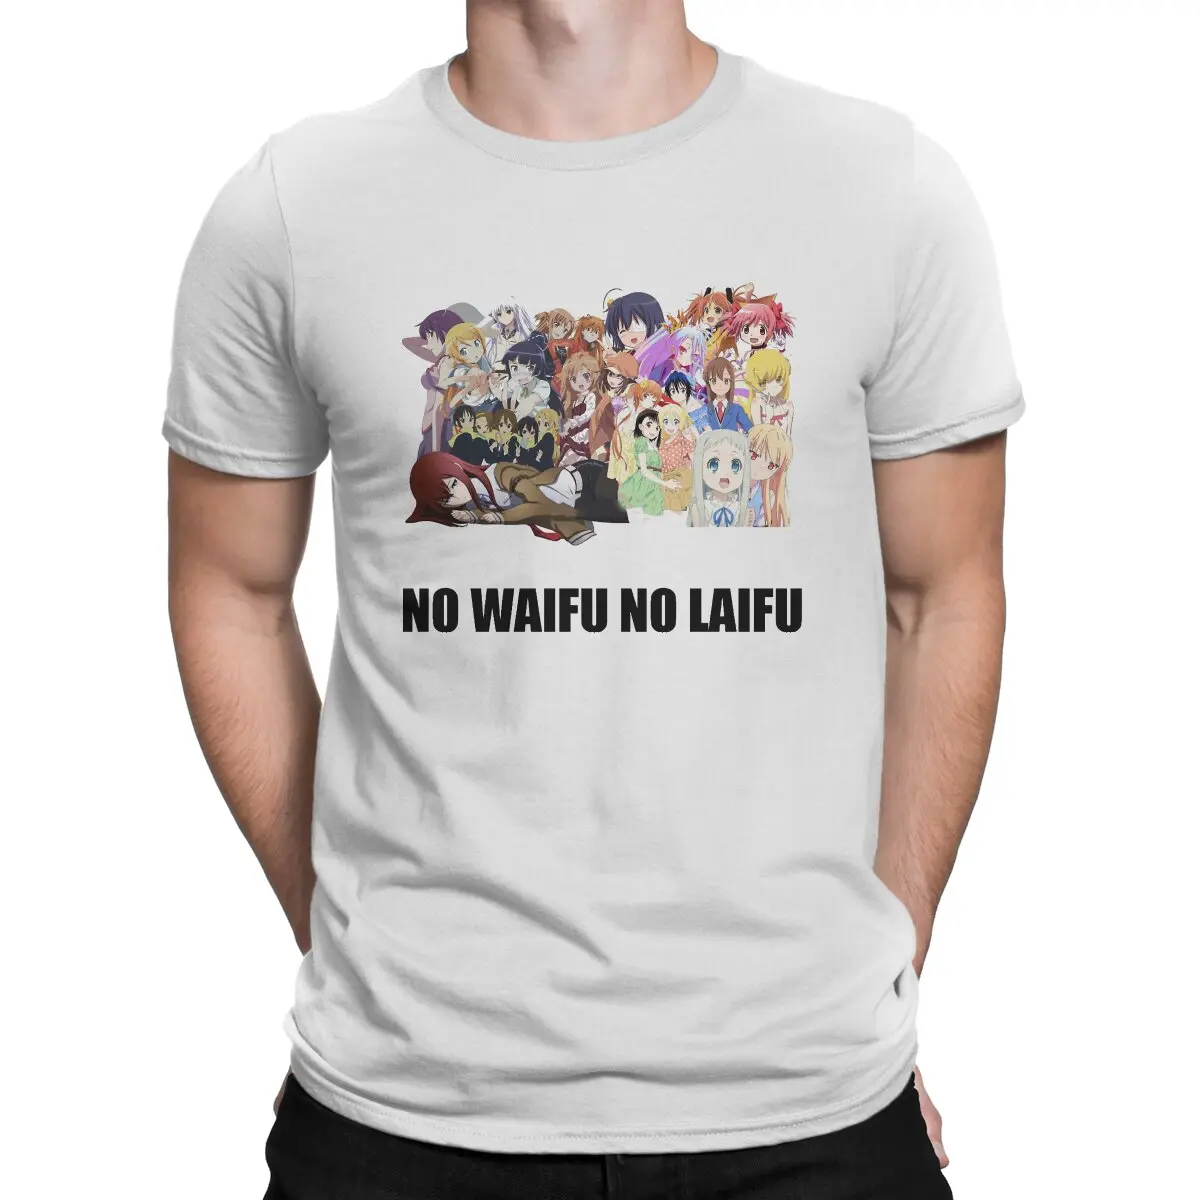 No waifu no laifu. Waifu Laifu наклейка.